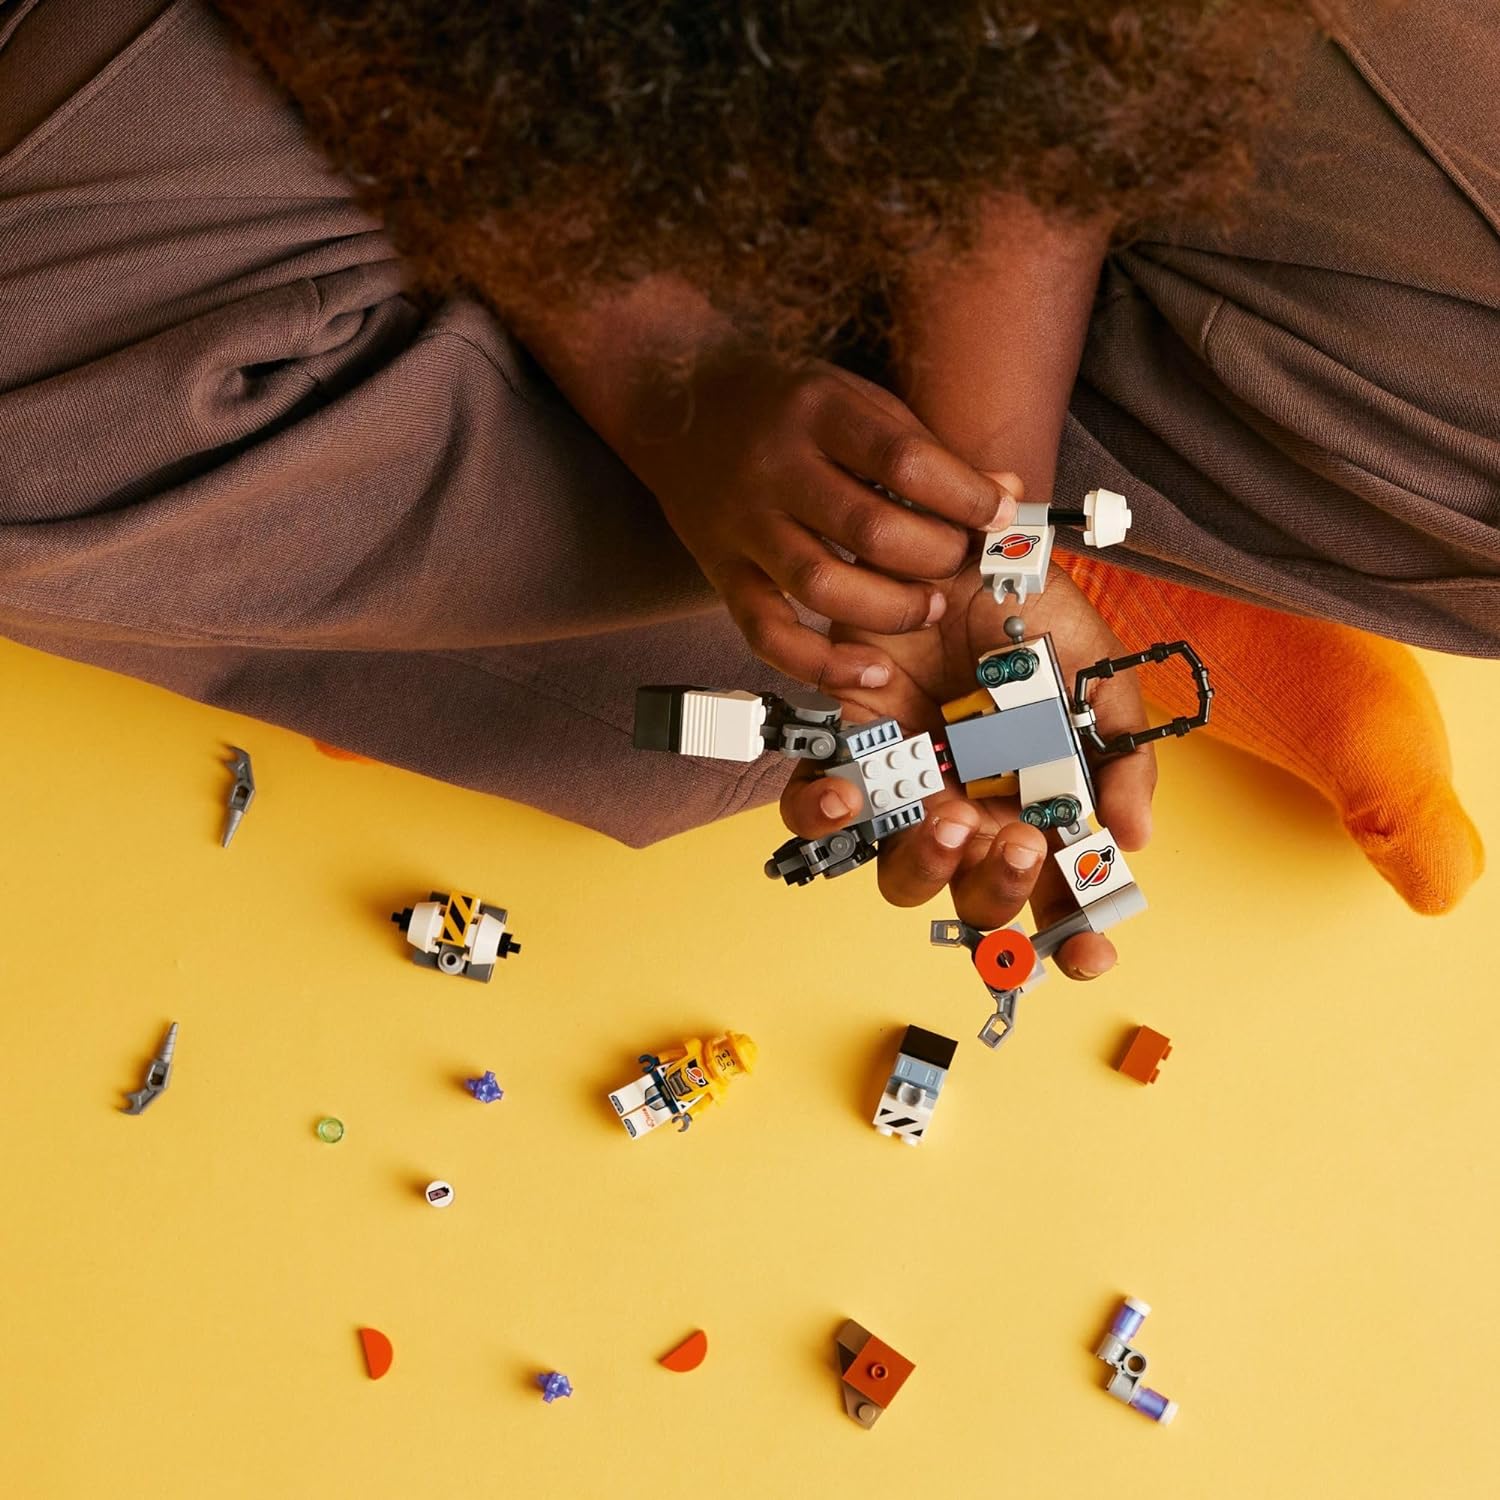 レゴ LEGO City Space Construction Mech Suit Building Set, Fun Space Toy for Kids Ages 6 and Up, Space Gift Idea for Boys and Girls Who Love Imaginative Play, Includes Pilot Minifigure and Robot Toy, 60428レゴ 3